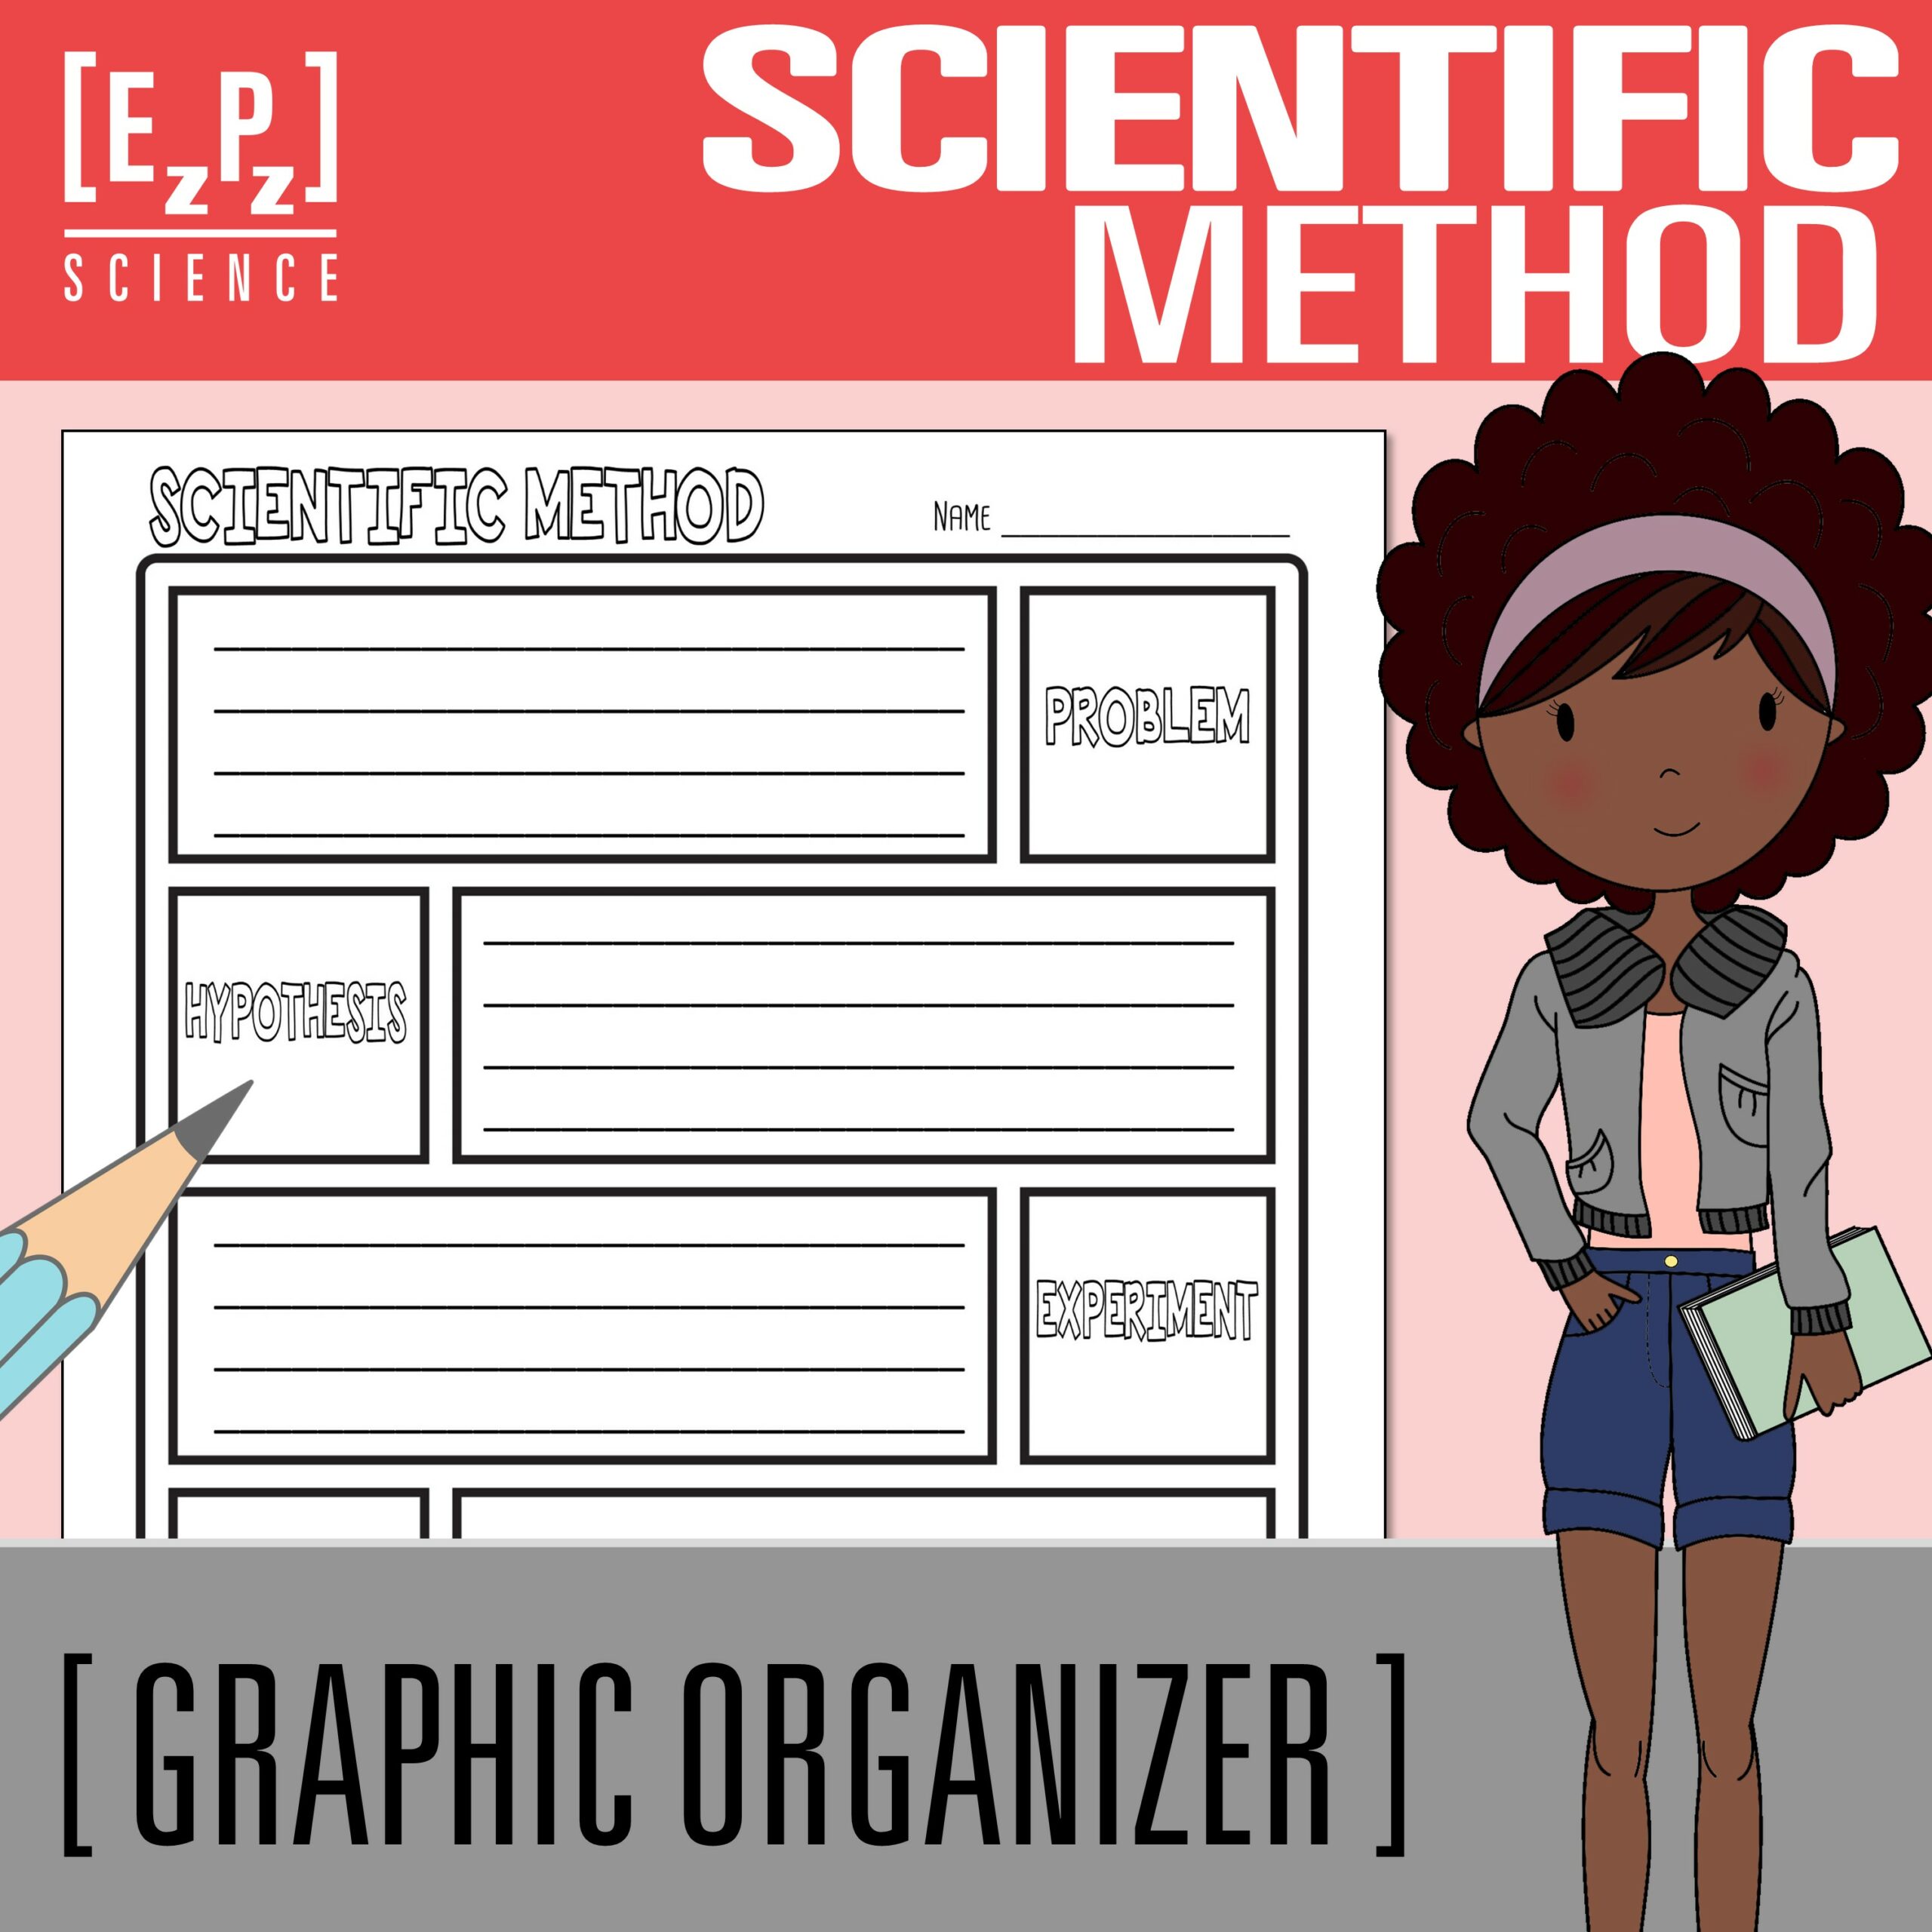 Scientific Method Science Graphic Organizer Template